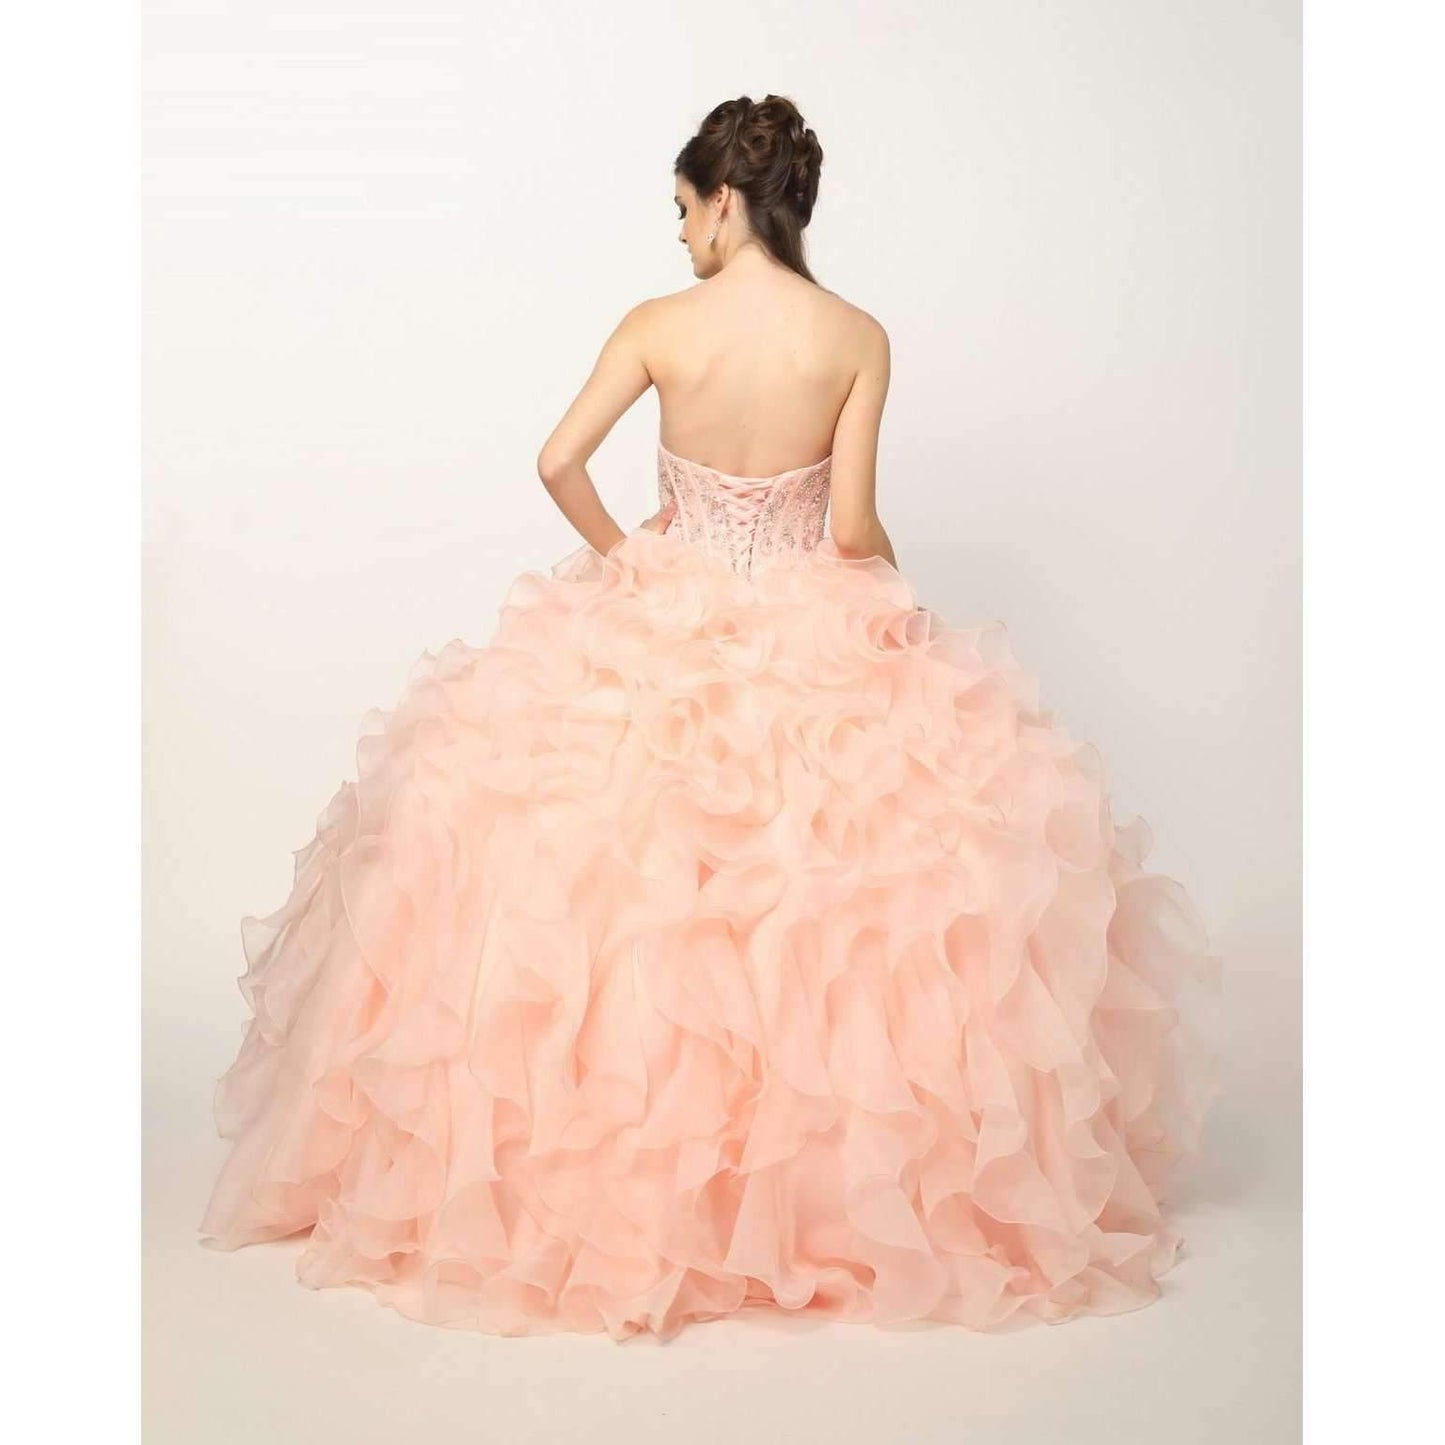 Long Strapless Quinceanera Ruffled Skirt Ball Gown - The Dress Outlet Juliet